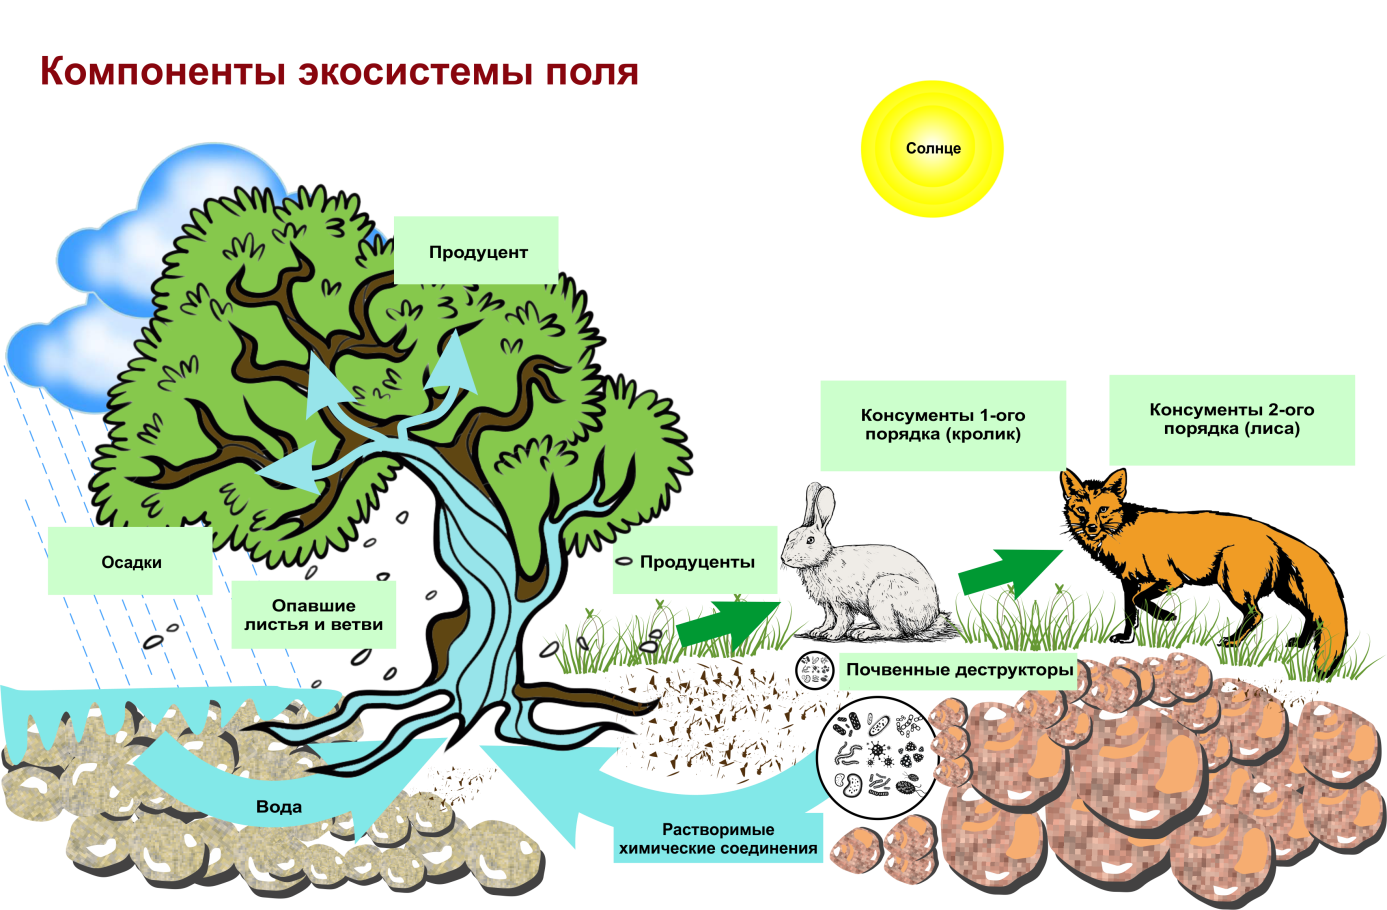 Искусственная биологическая система. Структура биогеоценоза и экосистемы. Схема трофической структуры биоценоза широколиственного леса. Строение биогеоценоза экосистемы. Схема состава компонентов экосистемы.